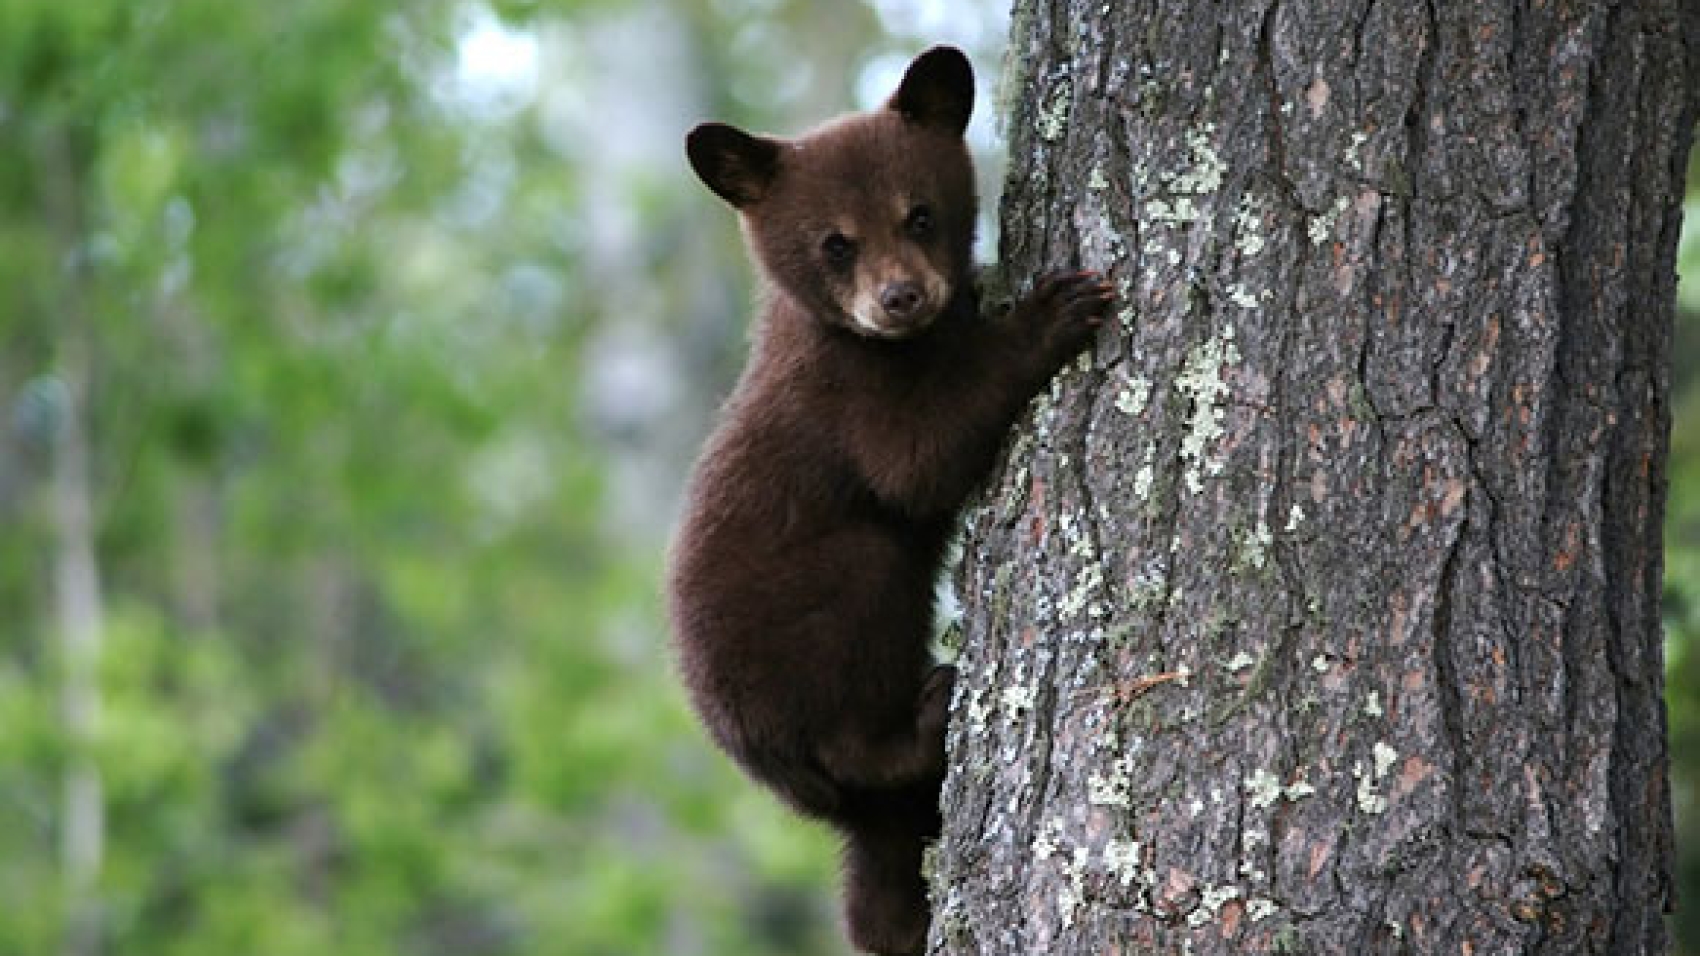 Bear-Cub